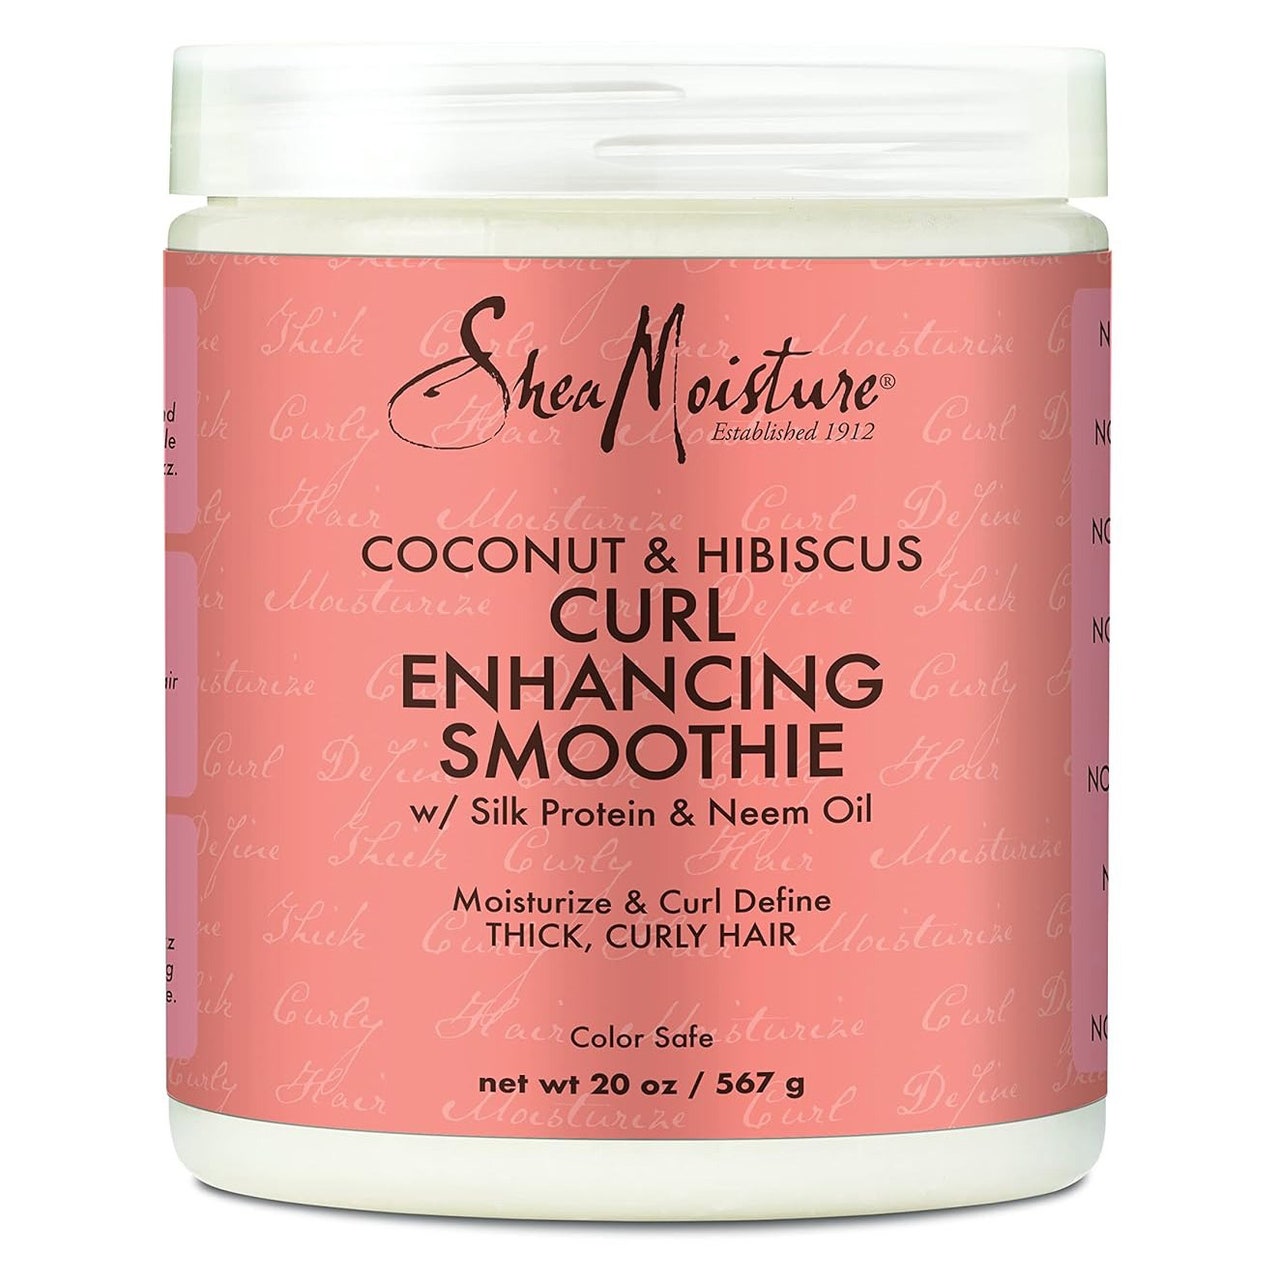 Shea Moisture Curl Enhancing Smoothie, weißes Glas mit rosa Etikett auf weißem Hintergrund